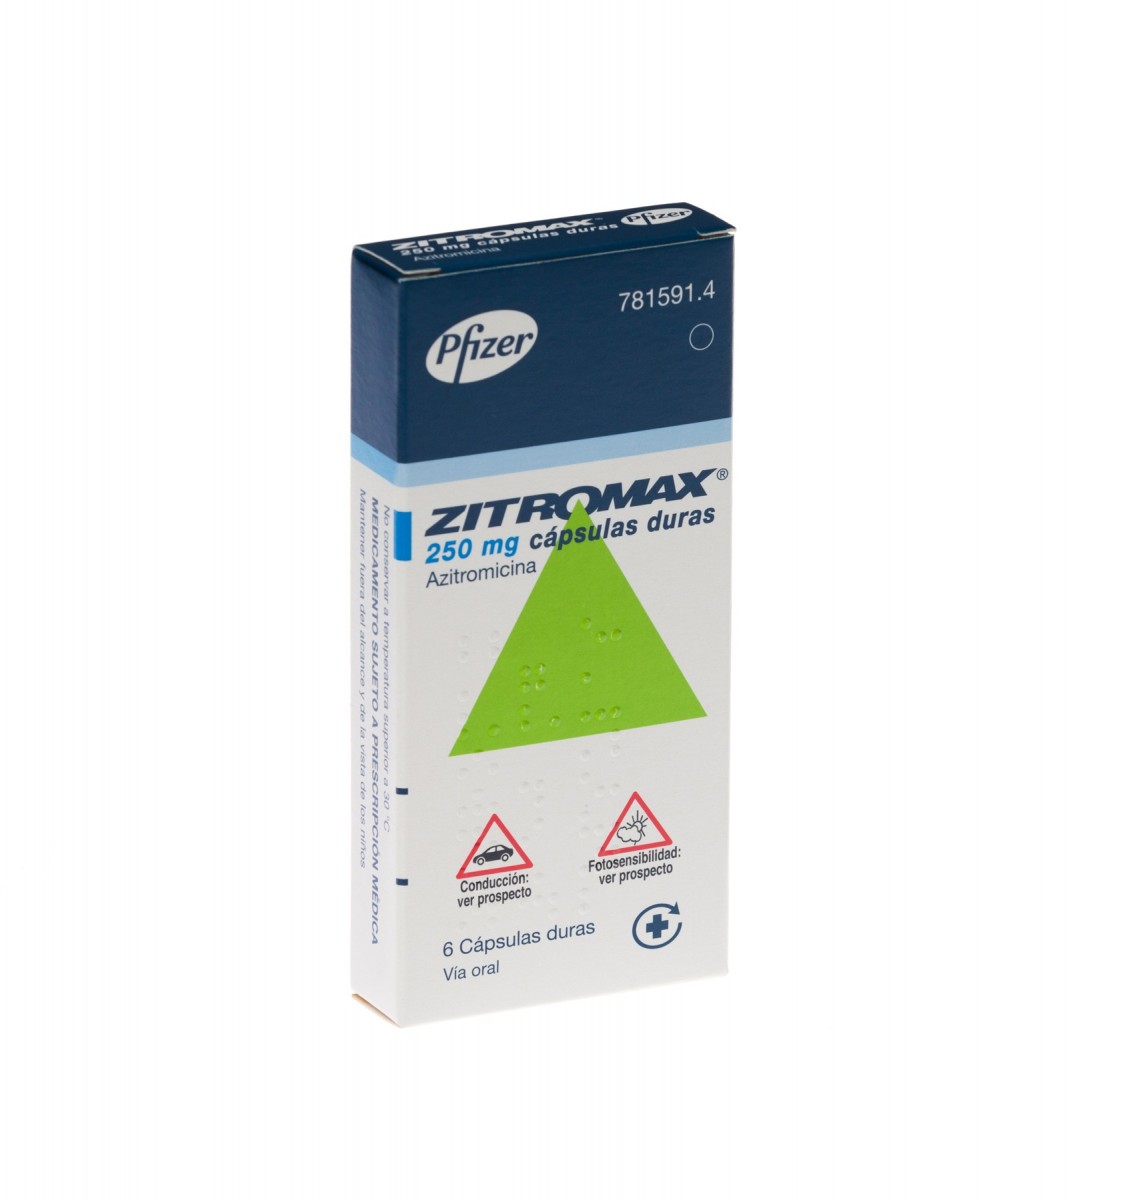 ZITROMAX 250 mg CAPSULAS DURAS, 6 cápsulas fotografía del envase.